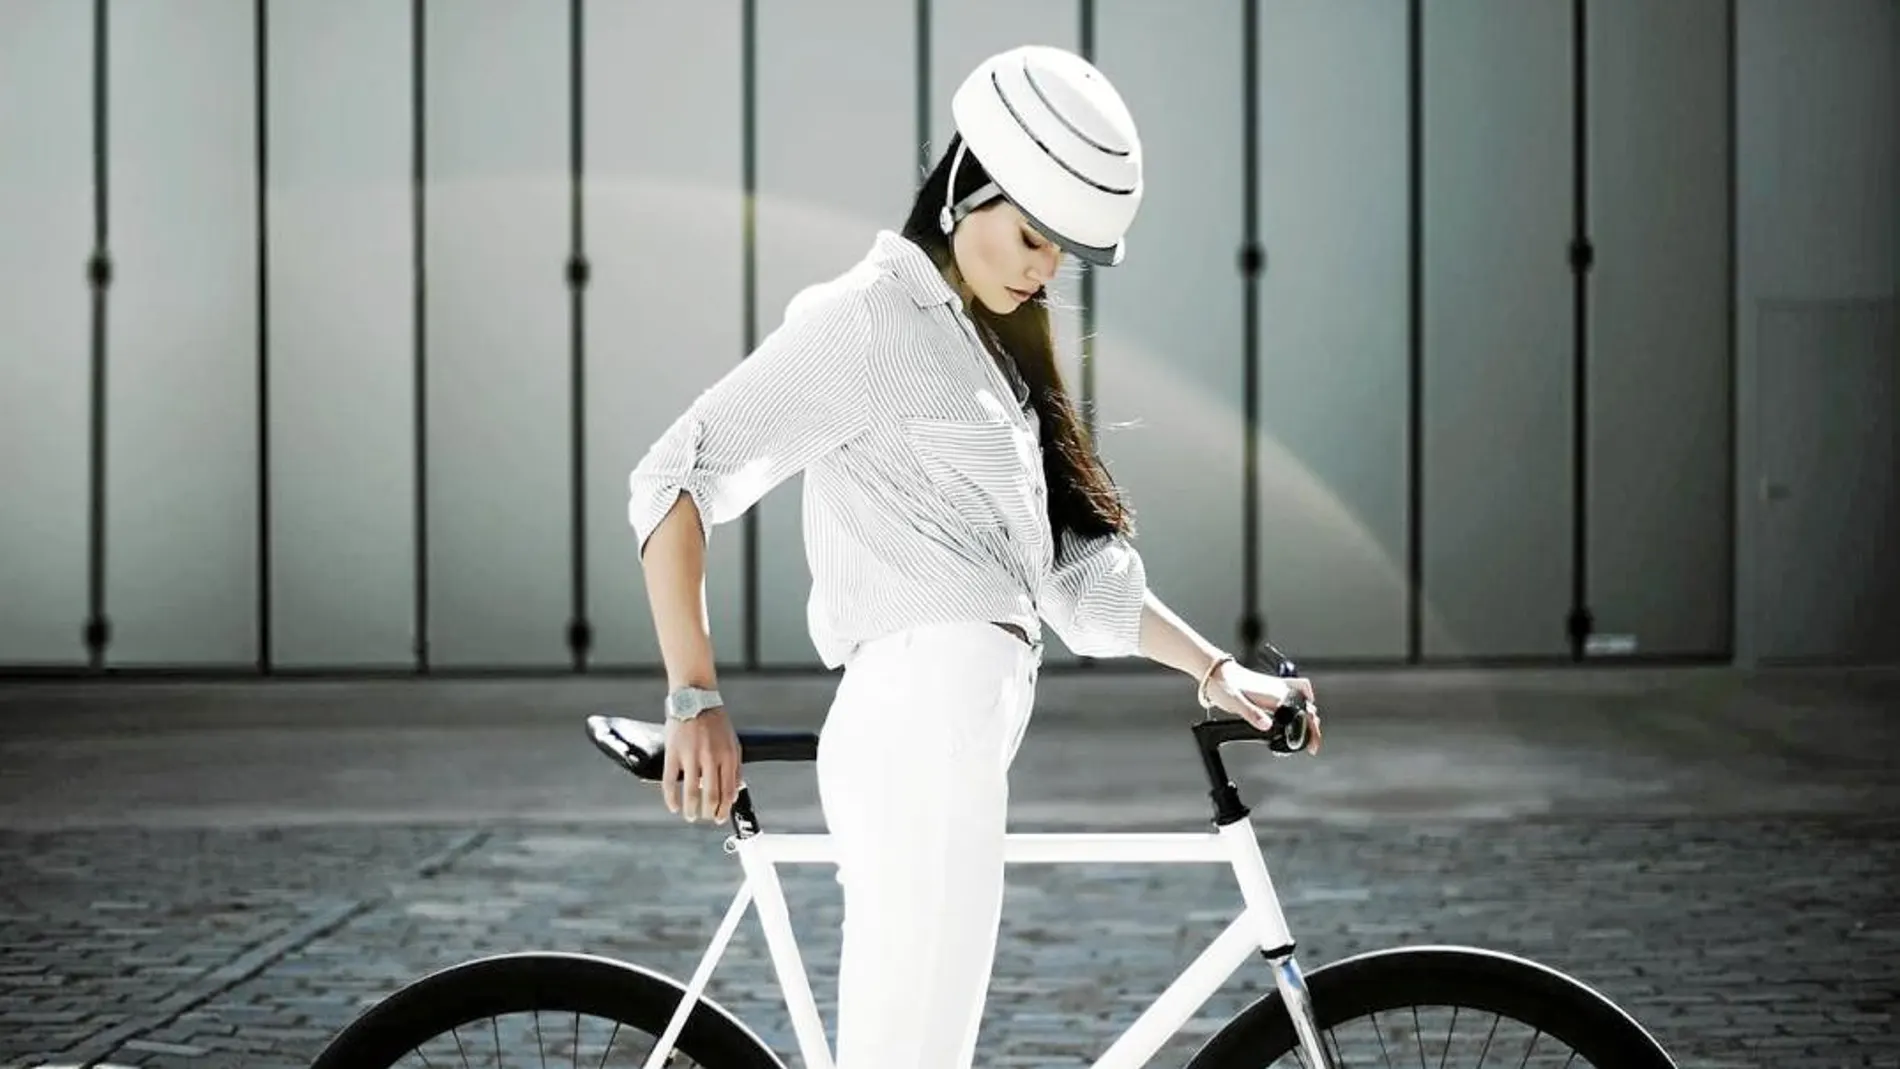 El casco plegable está pensado para que más gente vaya en bicicleta. Tras el artilugio se esconde la idea de un mundo más sostenible y consciente